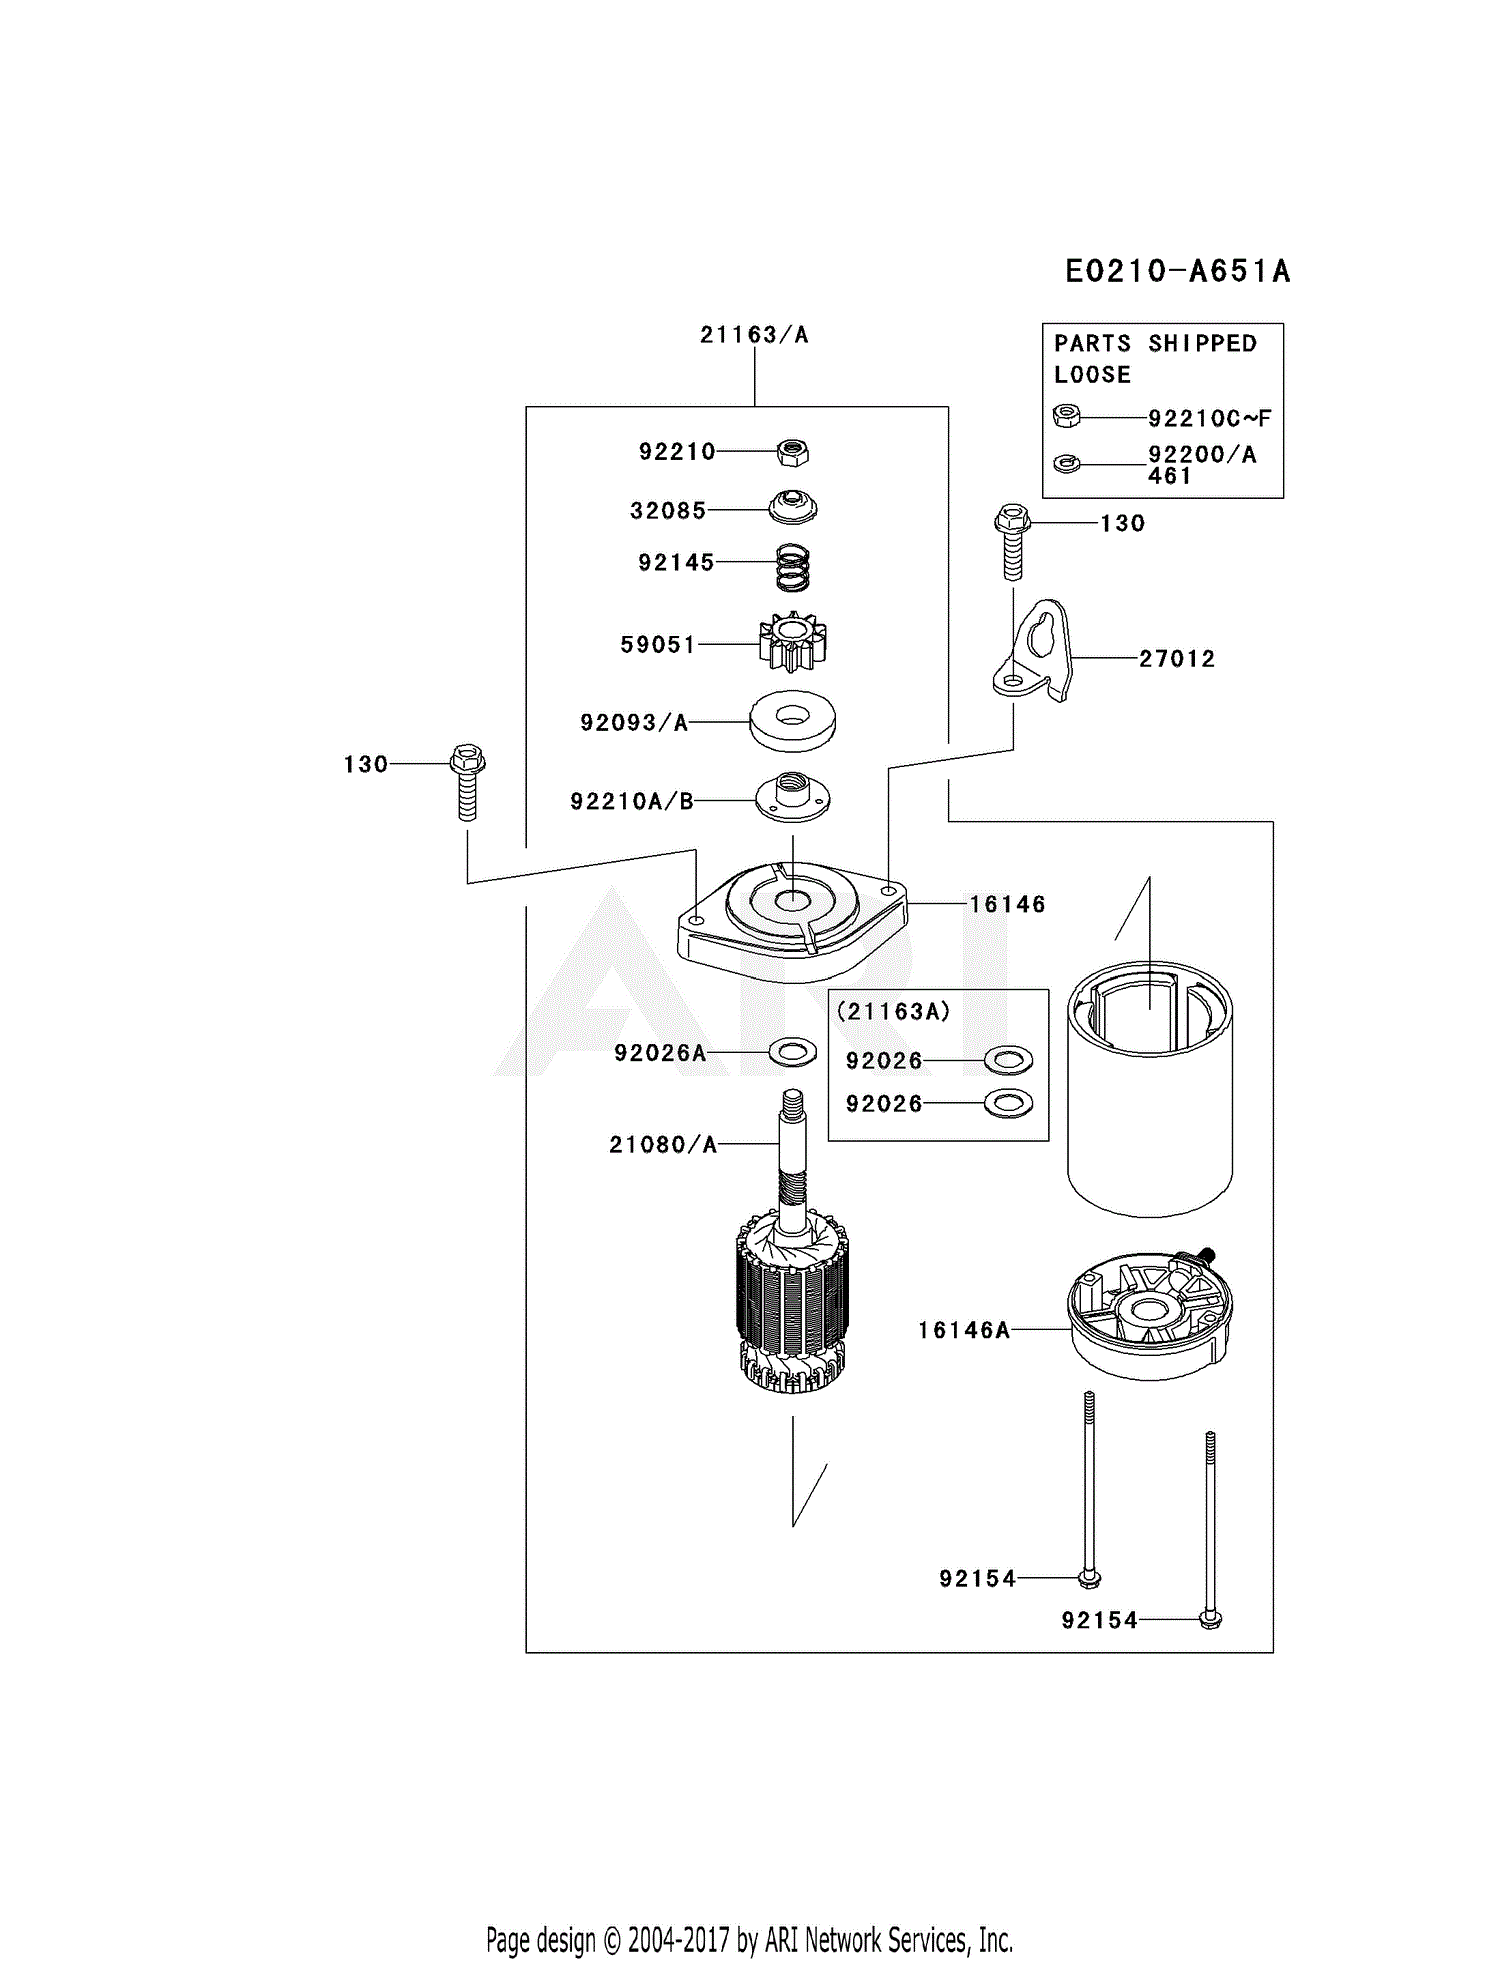 Kawasaki FR600V-AS08 4 Stroke Engine FR600V Parts Diagram ... 1 cylinder engine diagram 